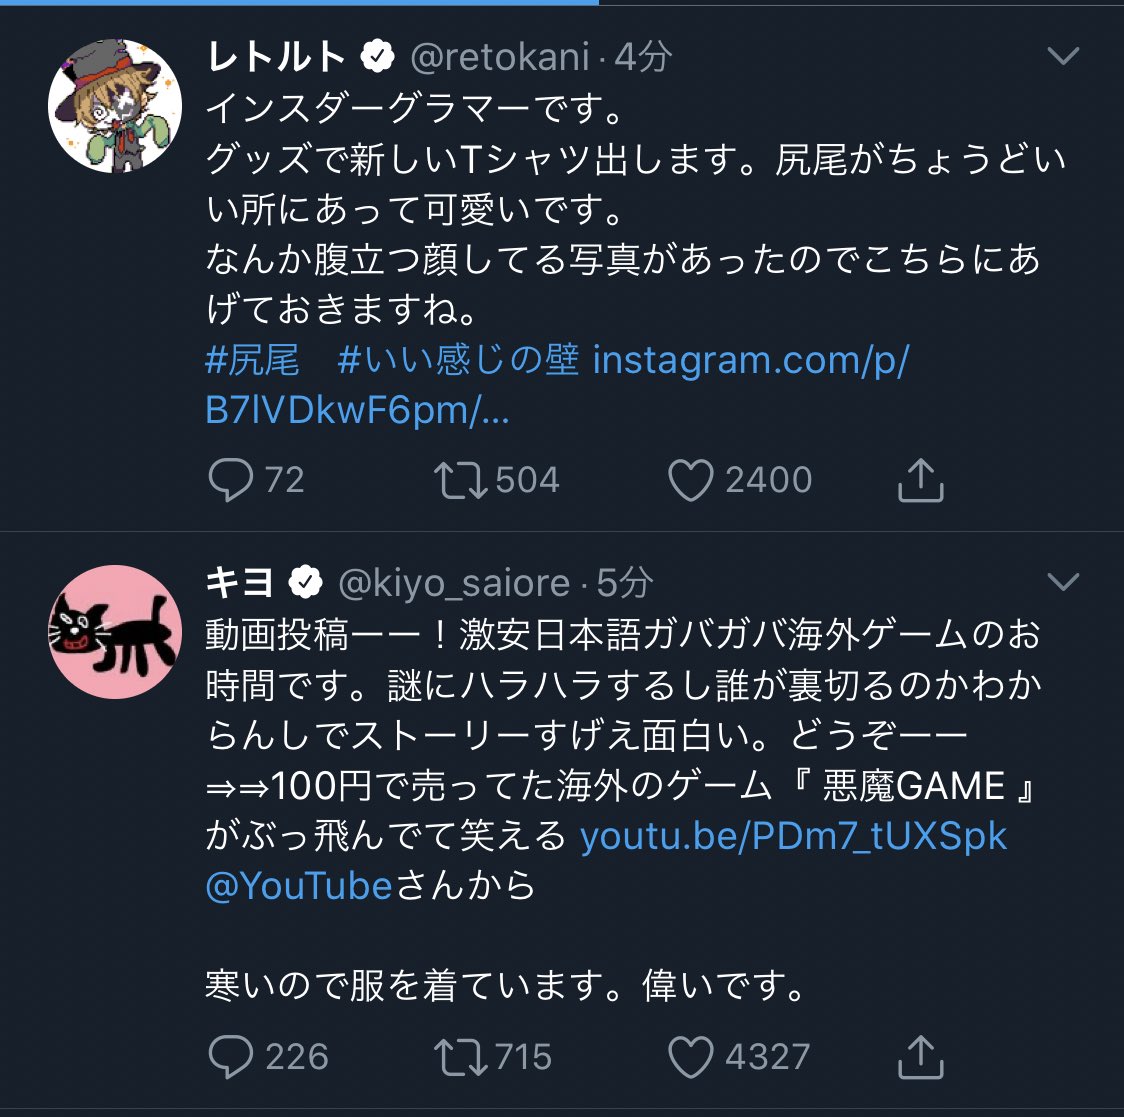 レトルト Twitter 日本トップ4 レトルト キヨ 牛沢 ガッチマン 徹底解剖